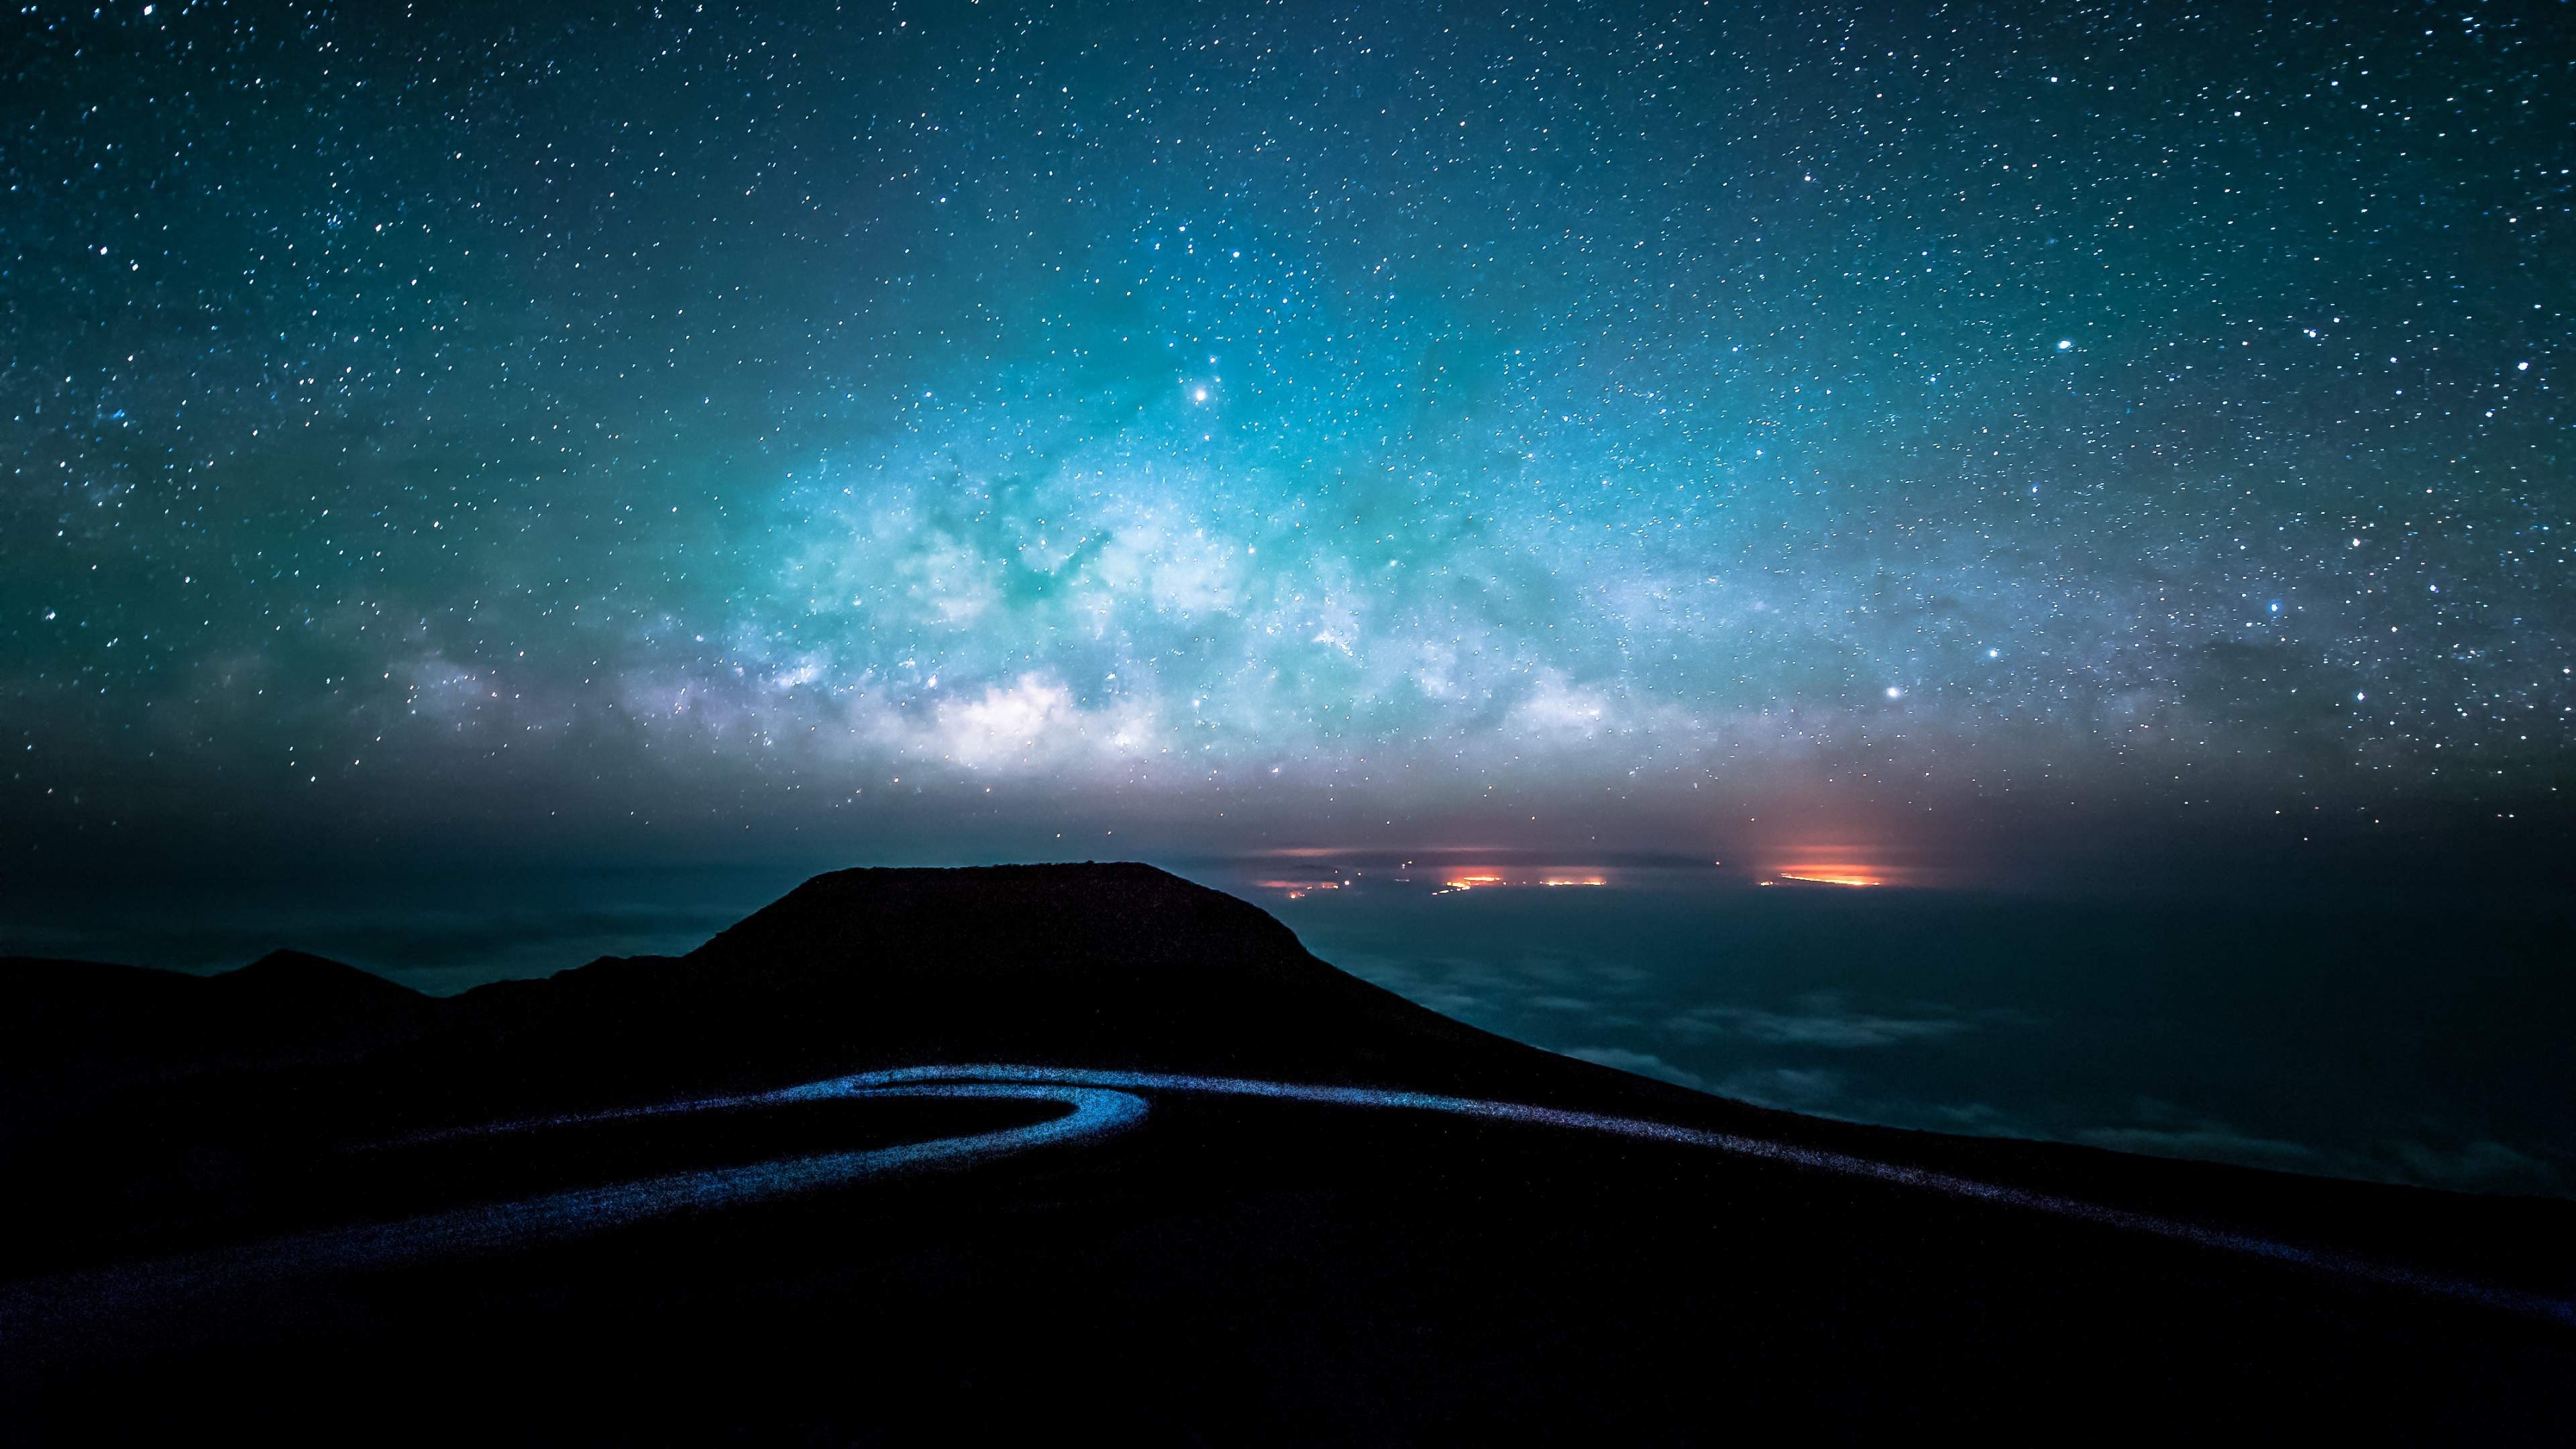 Hình nền siêu phân giải đường đêm và bầu trời sao là sự kết hợp hoàn hảo giữa khung cảnh vô cùng bí ẩn và thiên nhiên đẹp đến ngỡ ngàng. Hãy đắm mình trong không gian mênh mông của vũ trụ và cảm nhận những giây phút thư giãn tuyệt vời cùng bức hình độc đáo này!